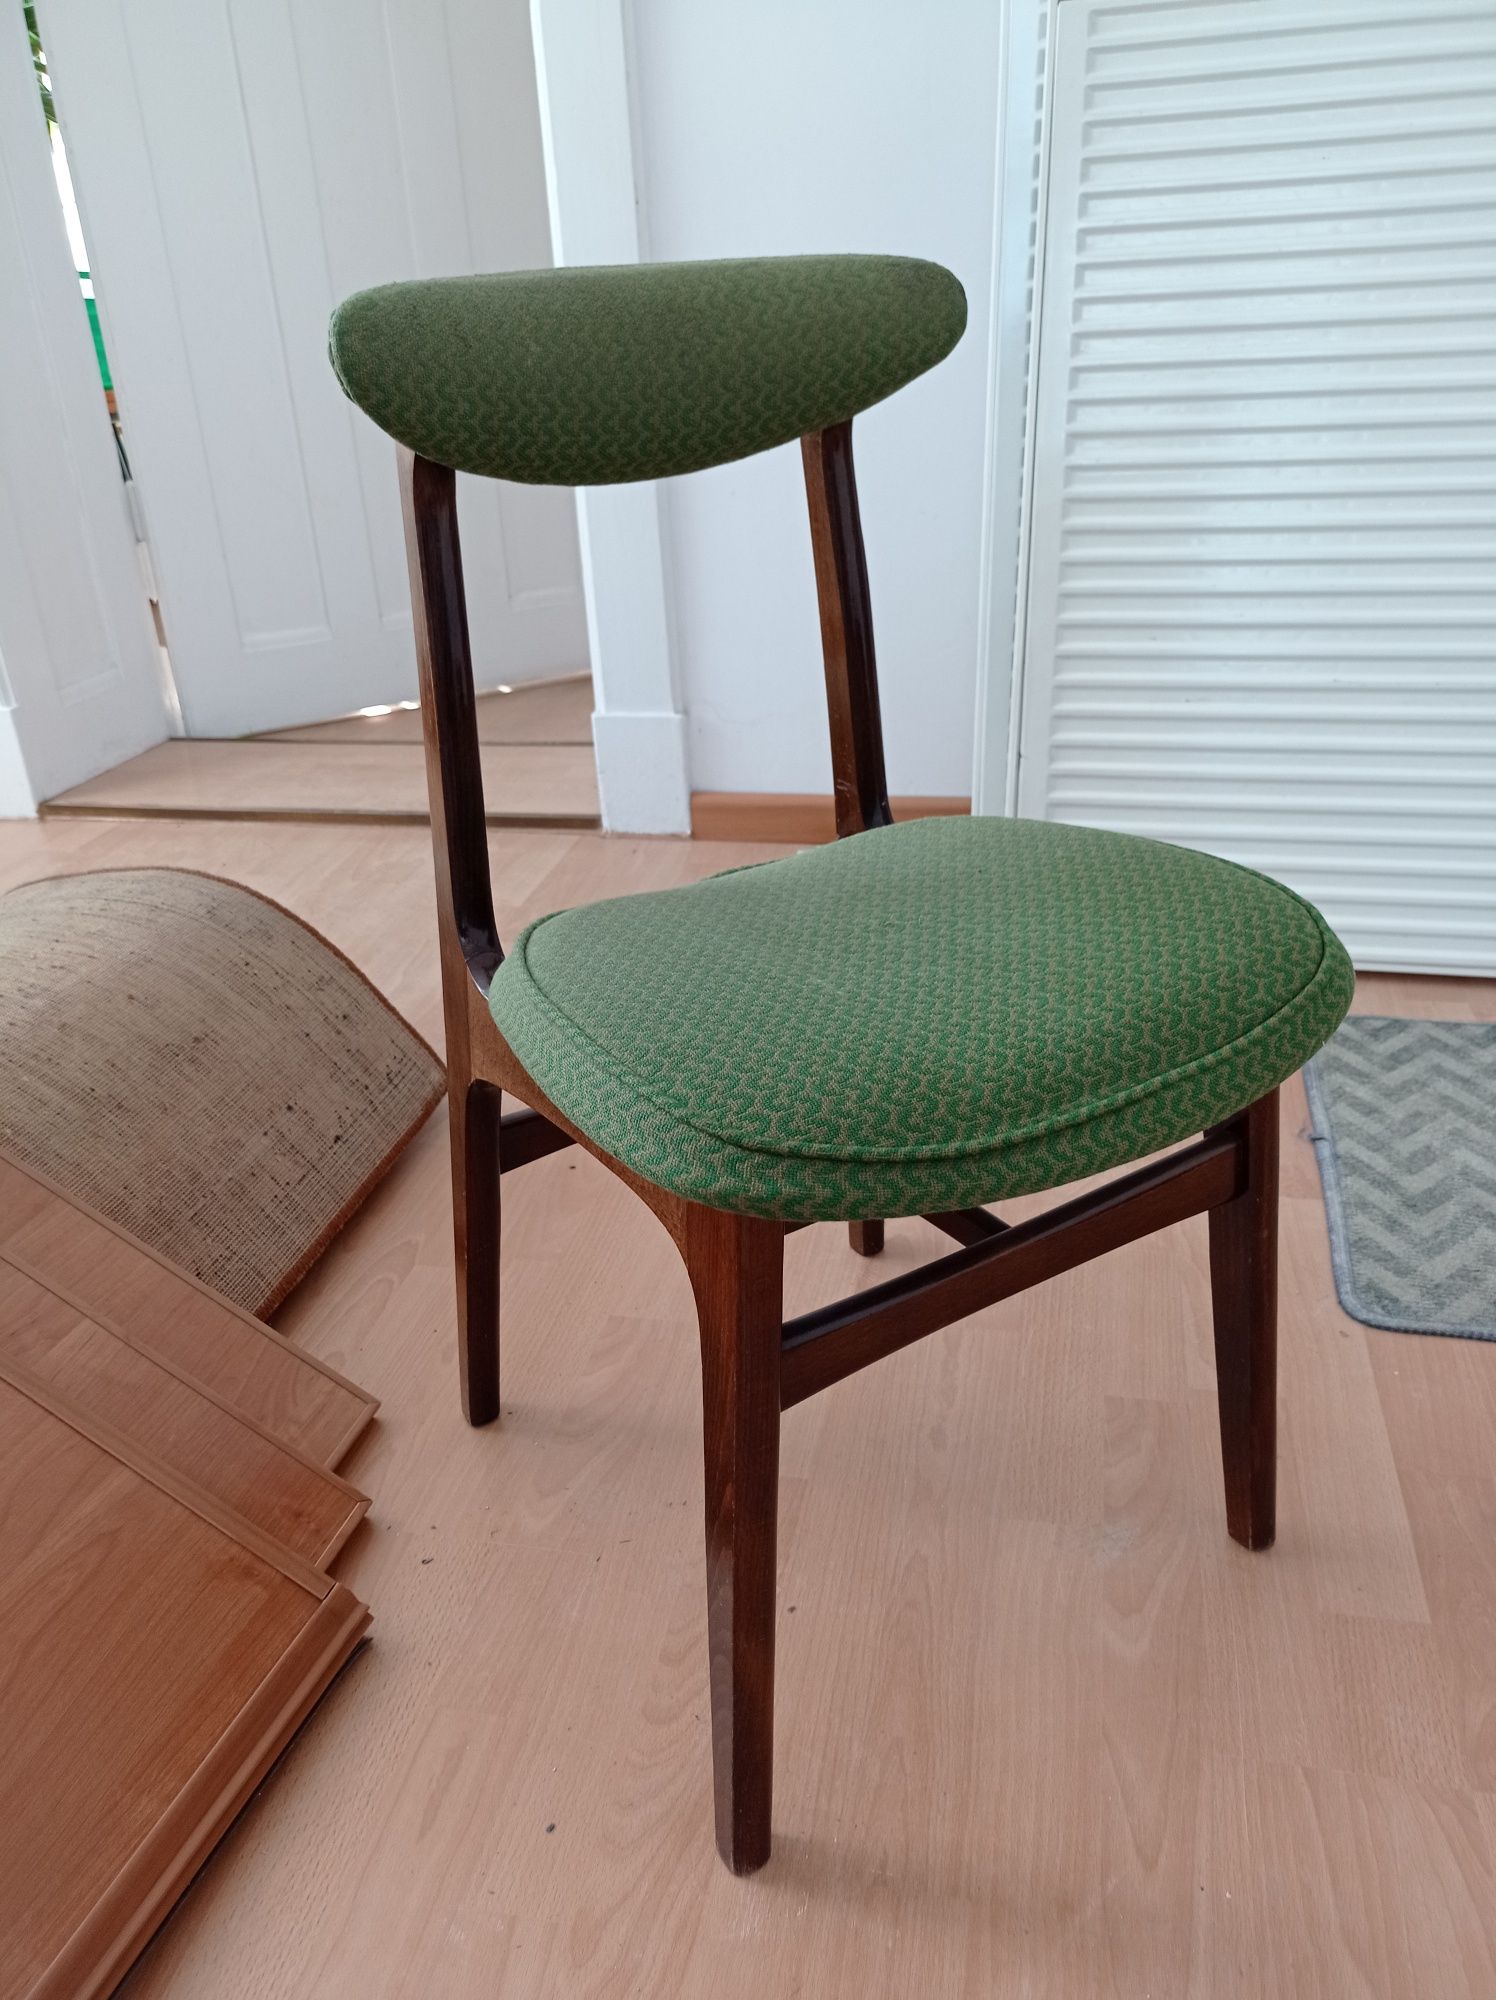 Krzesła typ 200-190 projektu Rajmunda Teofila Hałasa z 1963r.